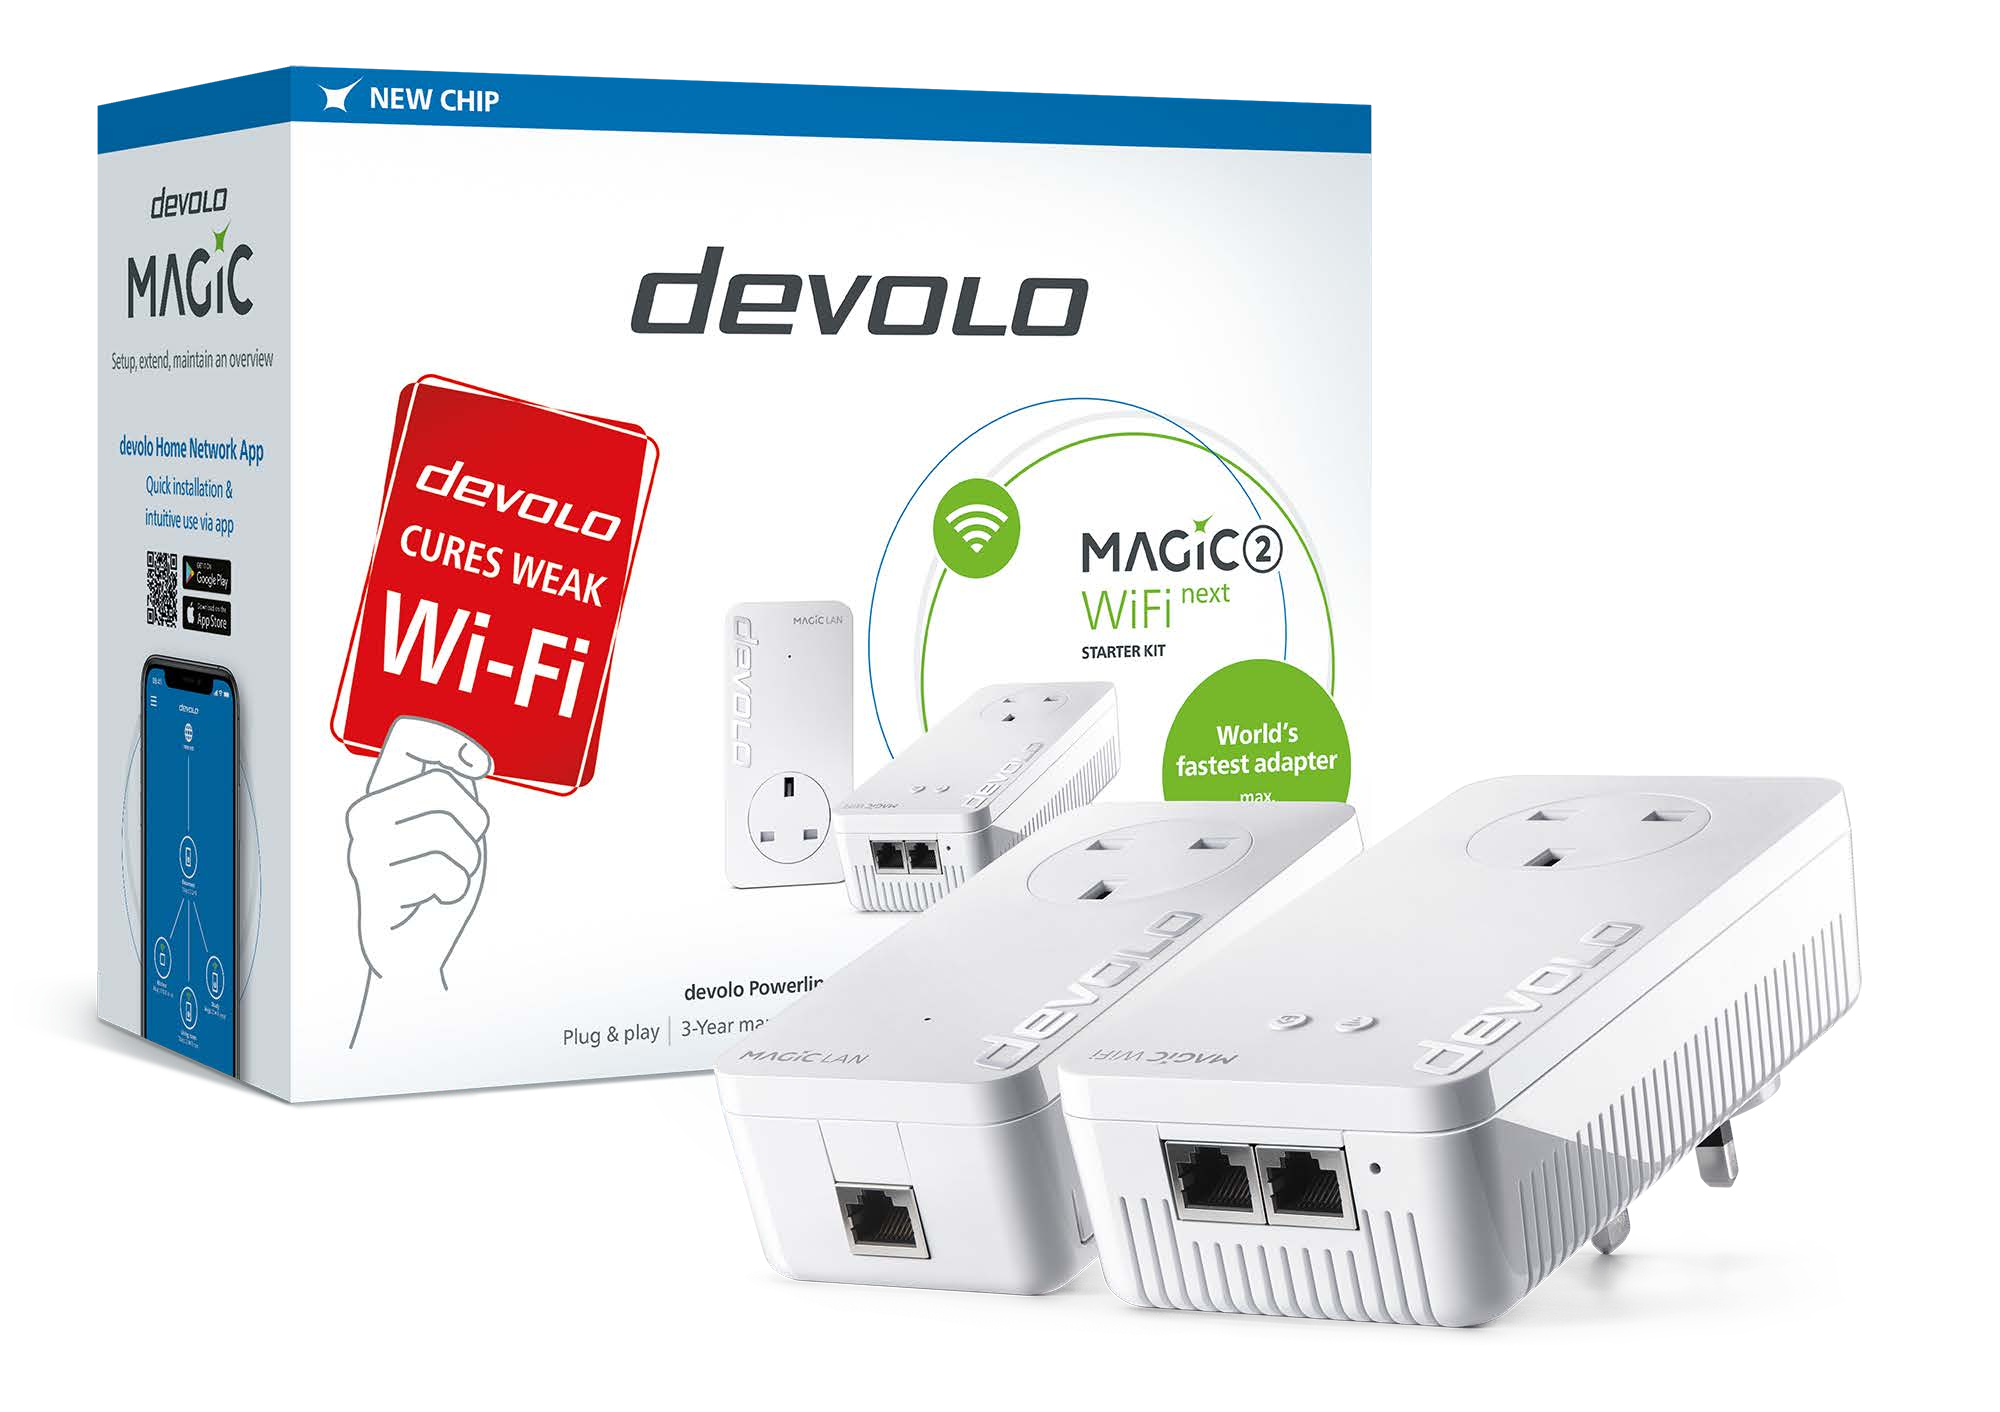 Devolo                           Magic 2 Wifi Next Starter Kit                                        In 8619